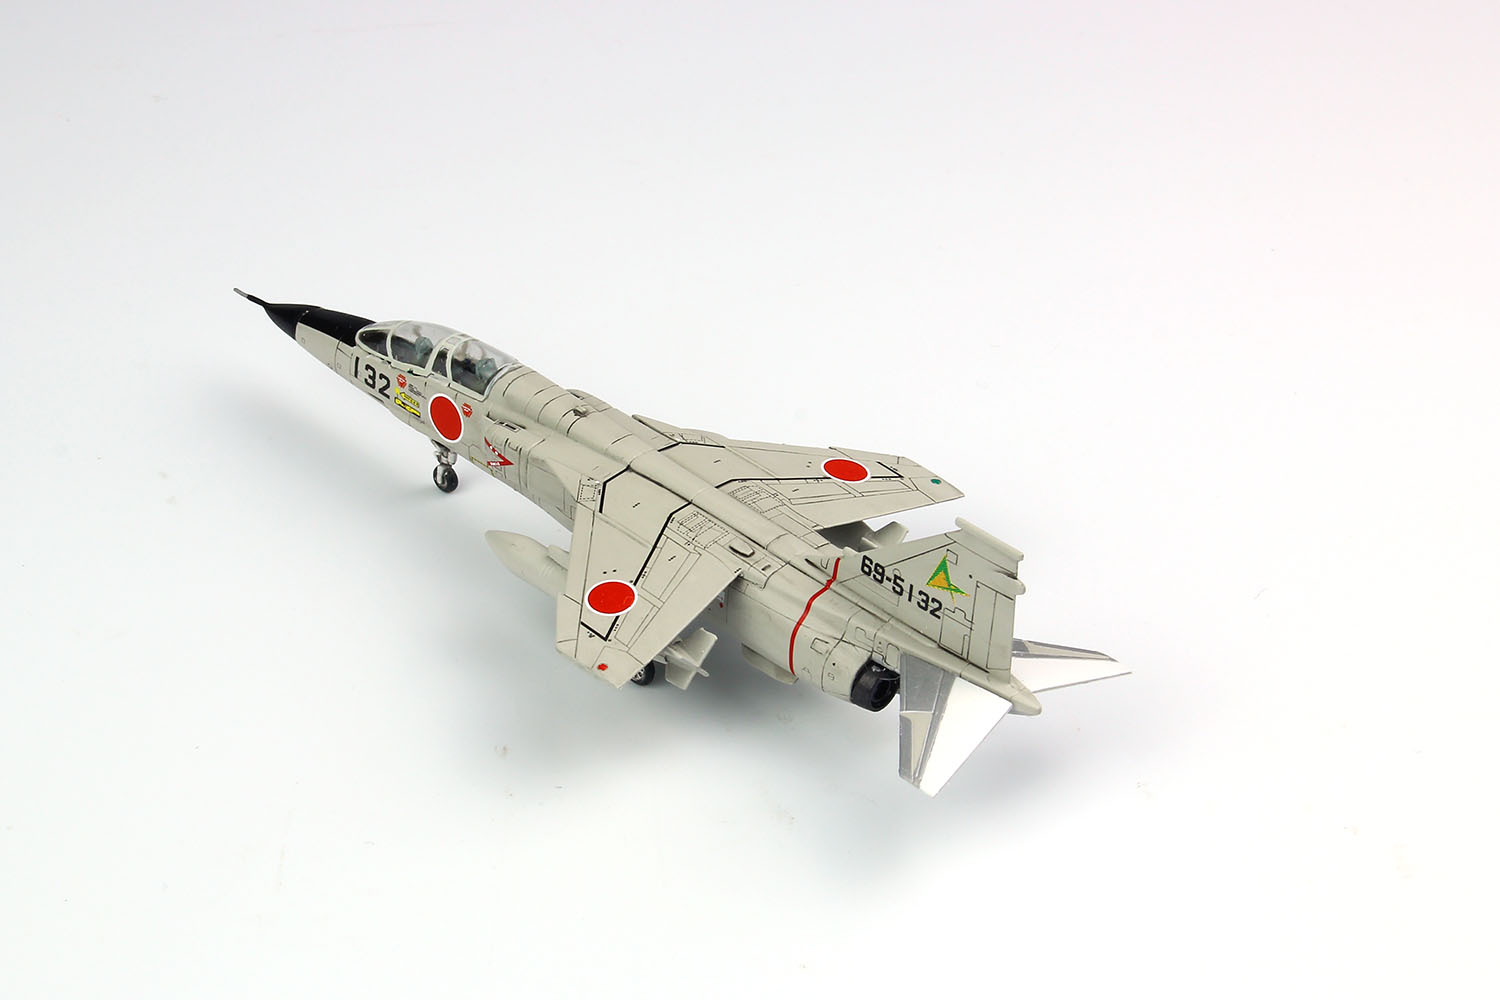 JASDF F-2A